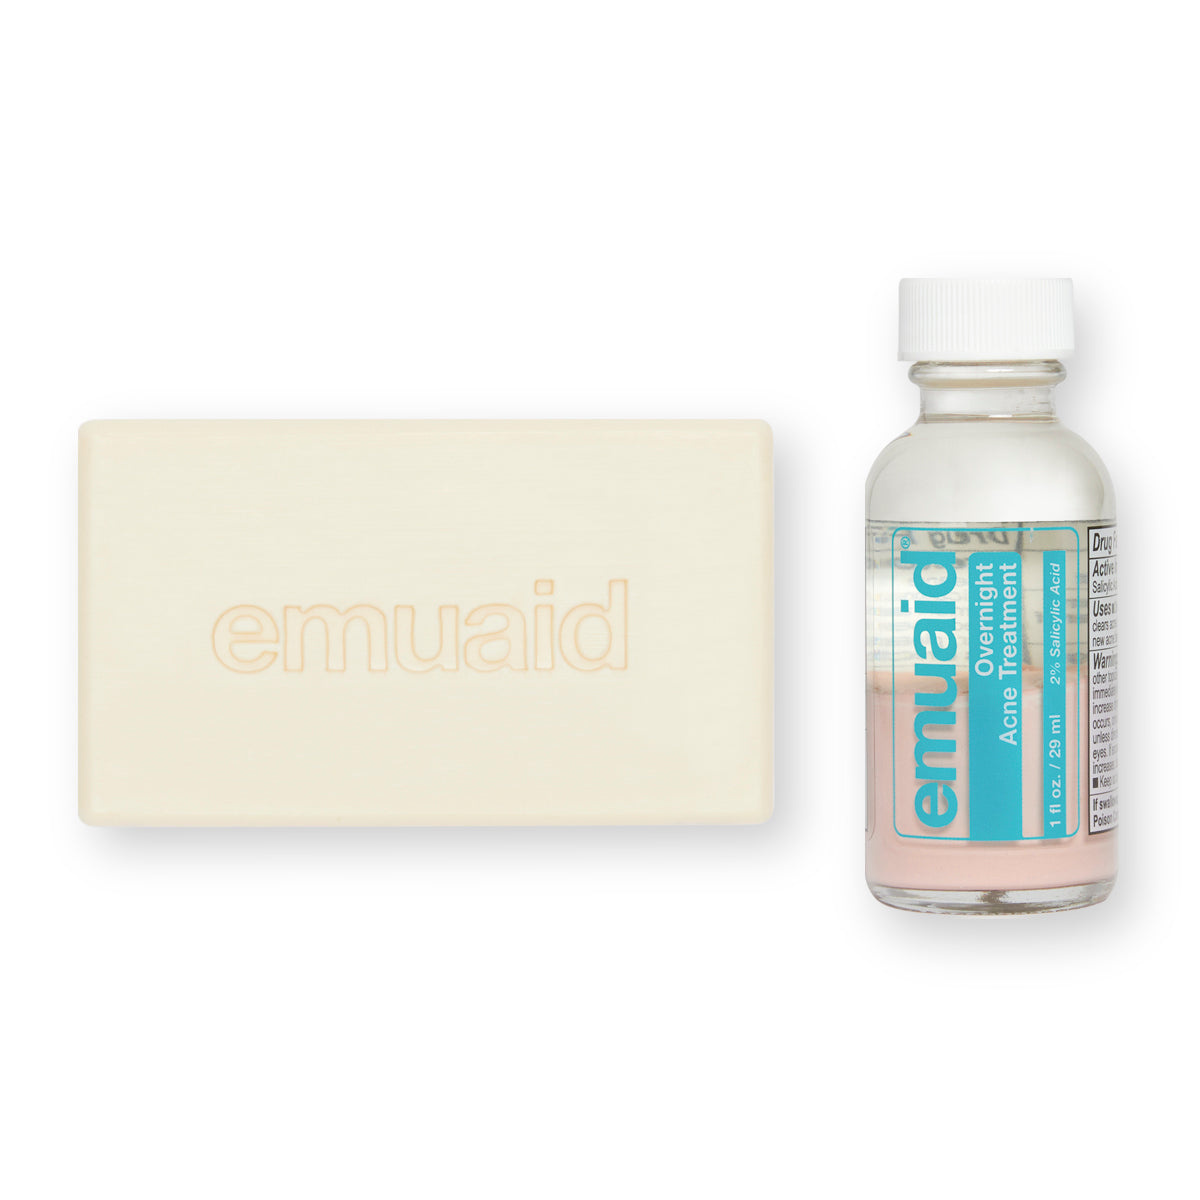 Dies ist ein Bild der EMUAID® Overnight Acne Treatment. und der EMUAID® Therapeutic Moisture Bar.